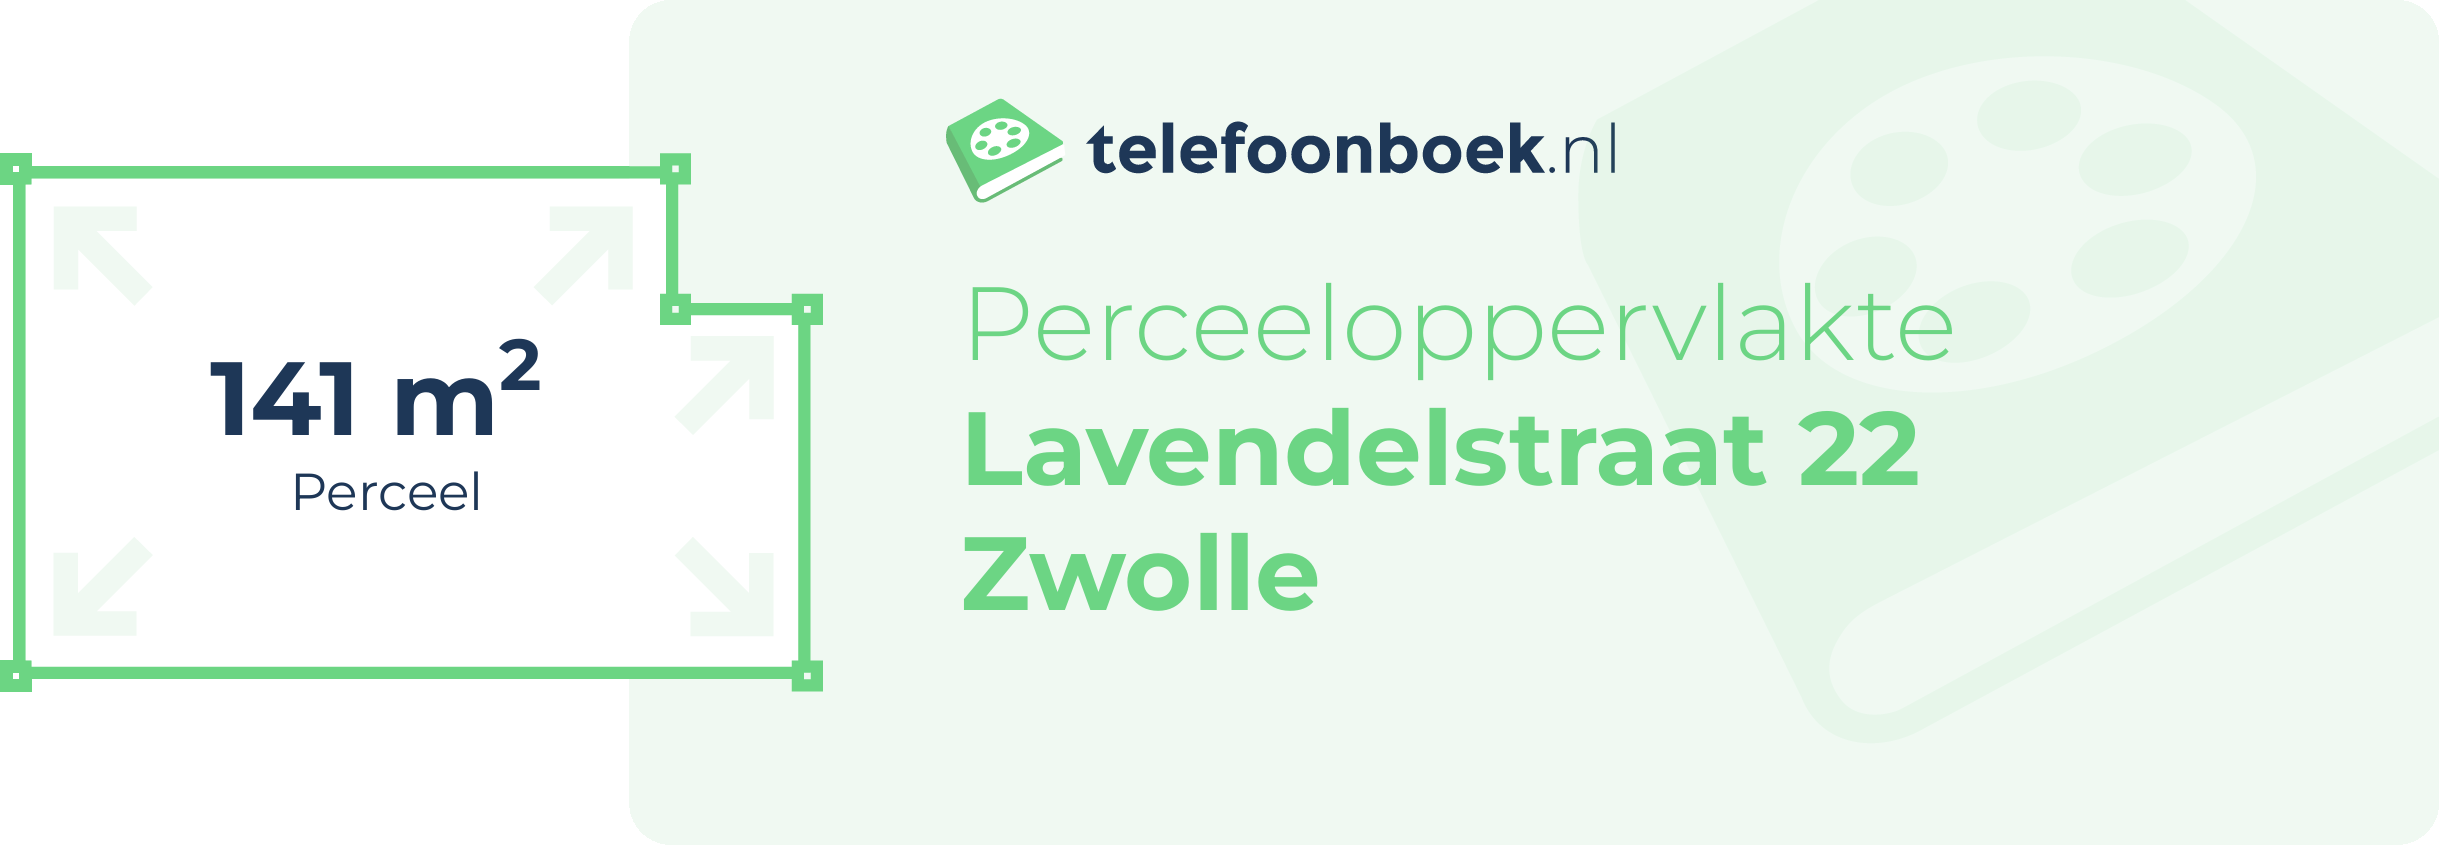 Perceeloppervlakte Lavendelstraat 22 Zwolle